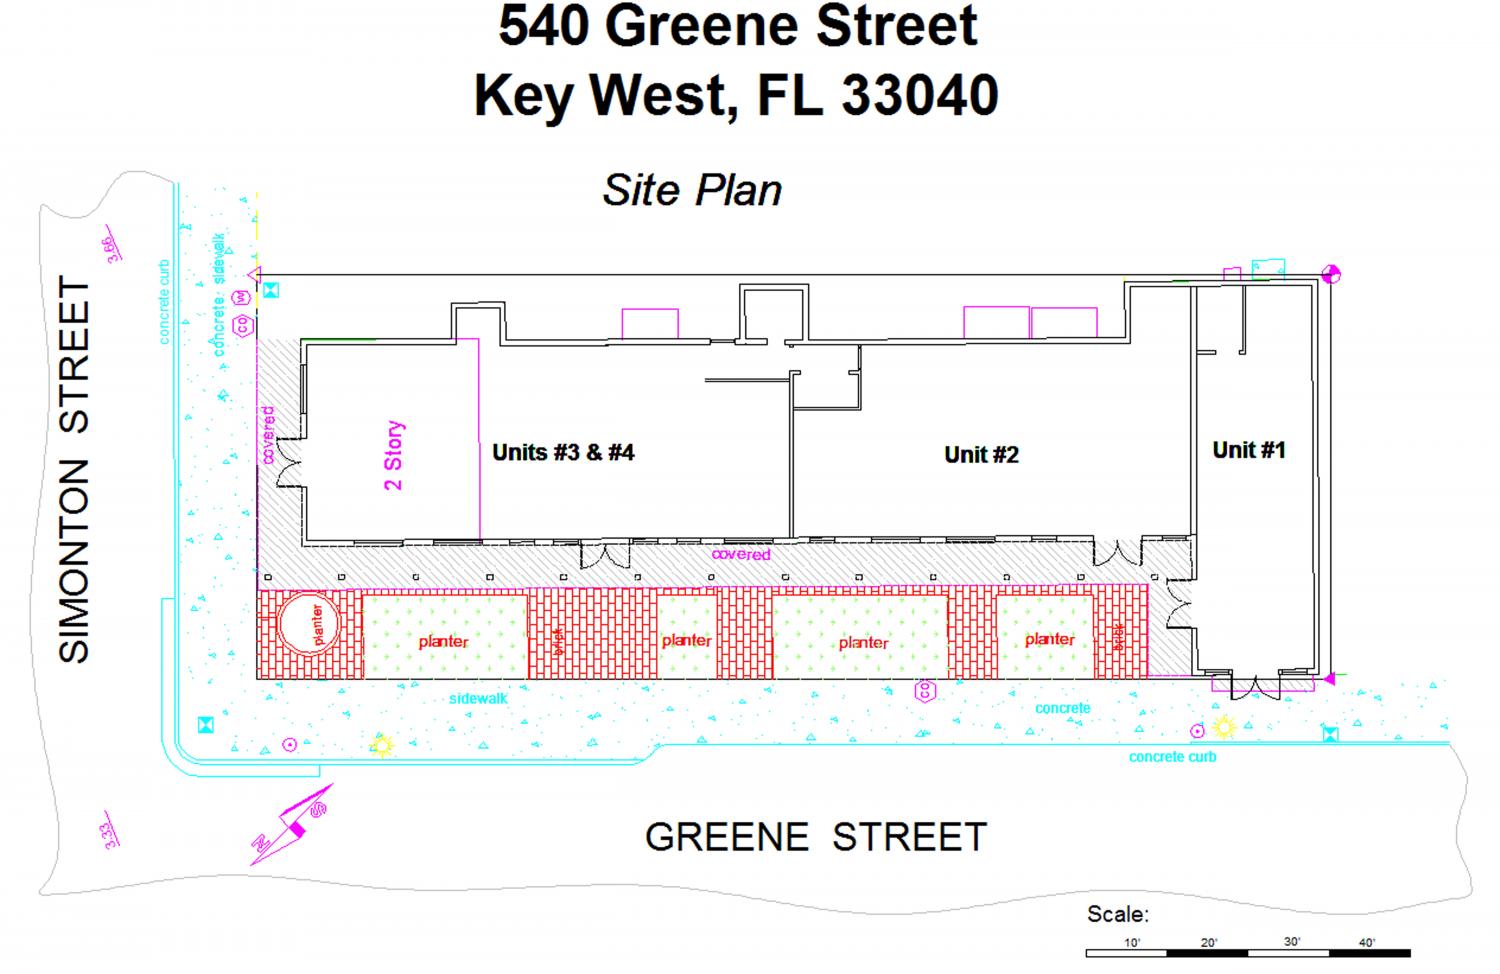 540 Greene Street